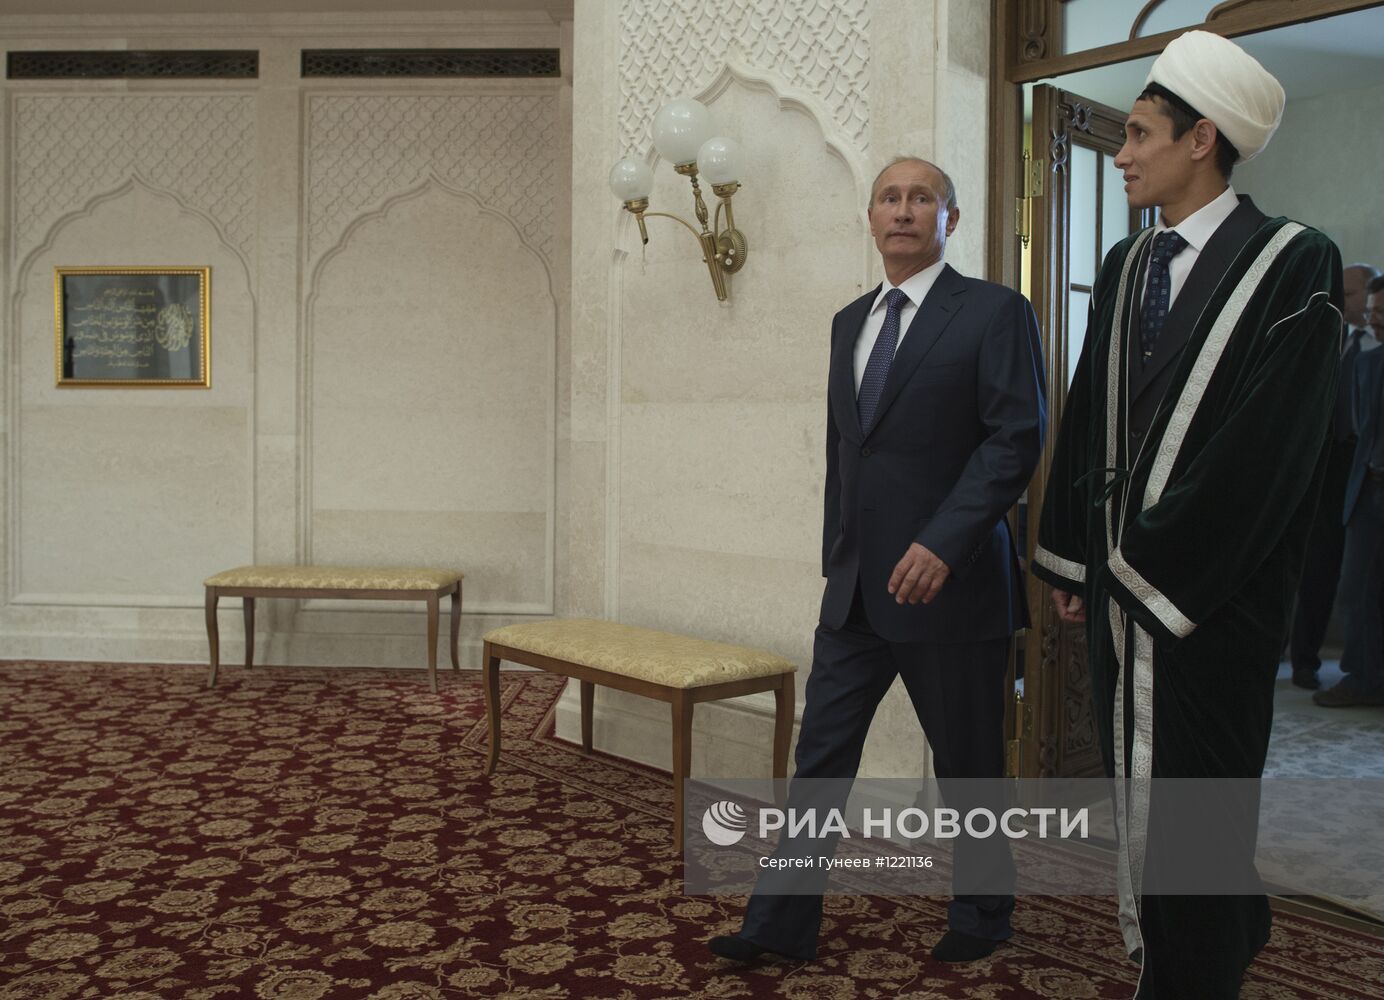 Рабочая поездка Владимира Путина в Приволжский федеральный округ